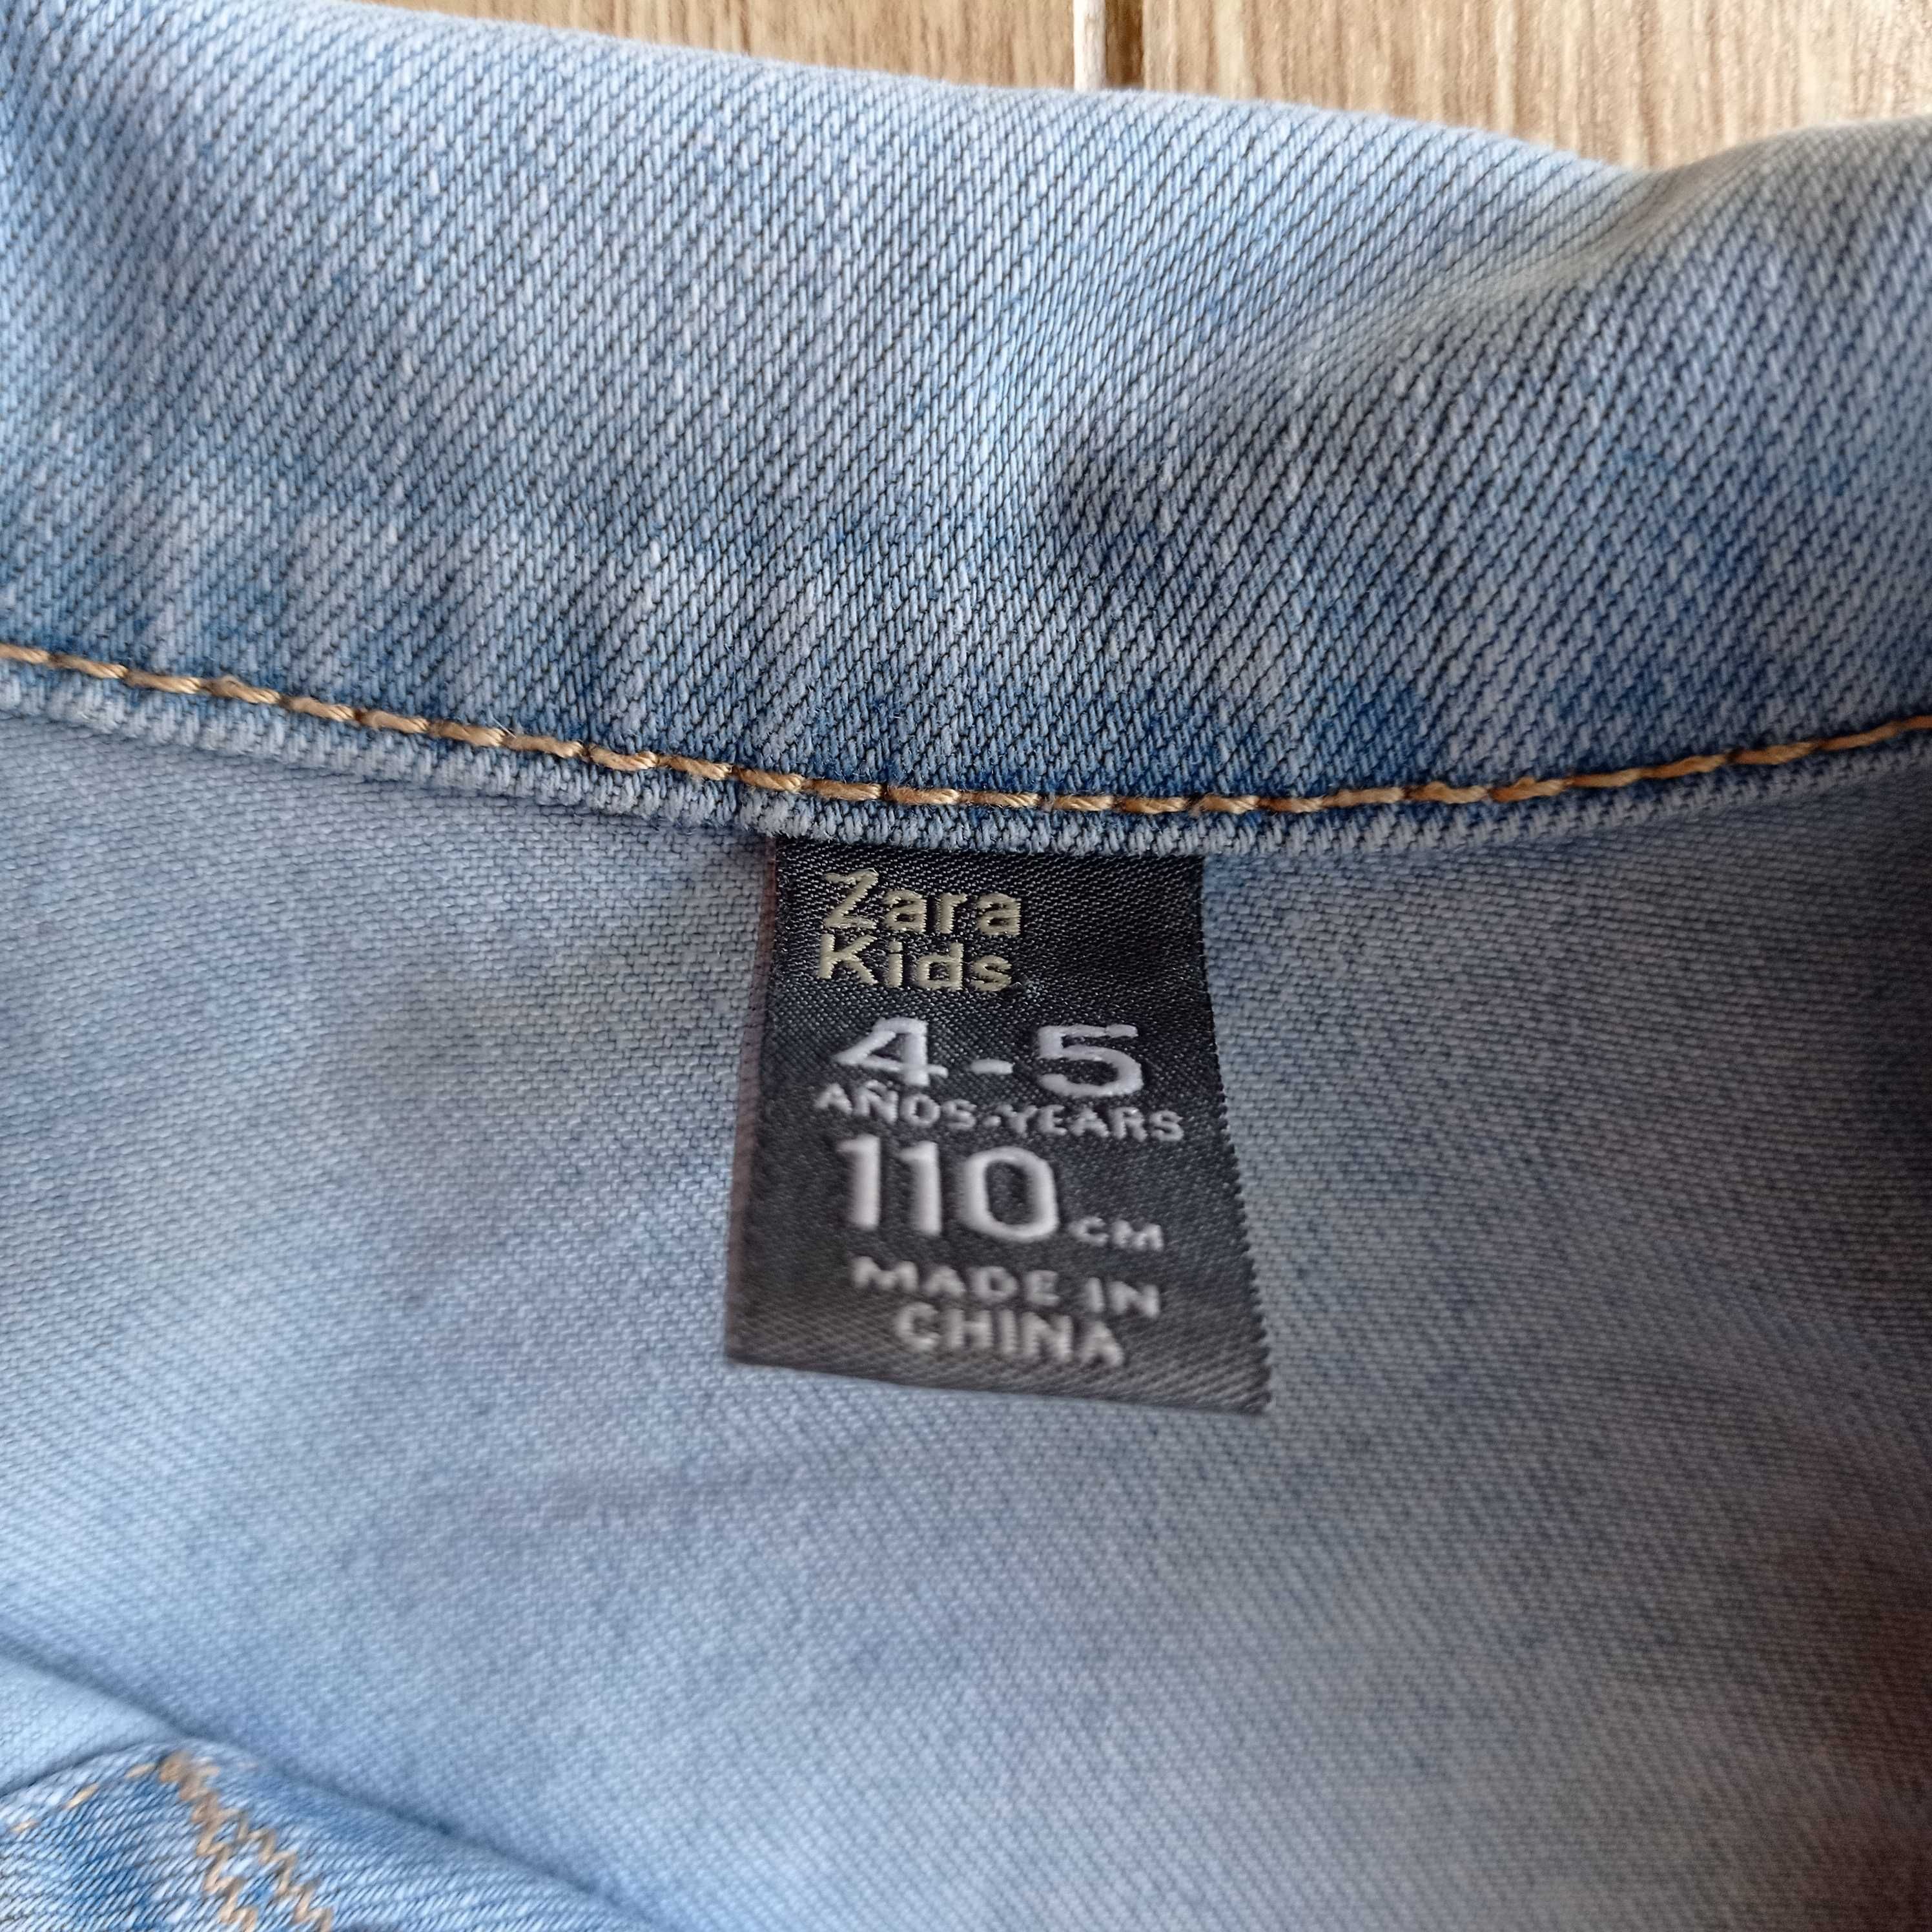 Zara Kids jasnoniebieska jeansowa kurtka katana 110cm tęcza 4-5lat